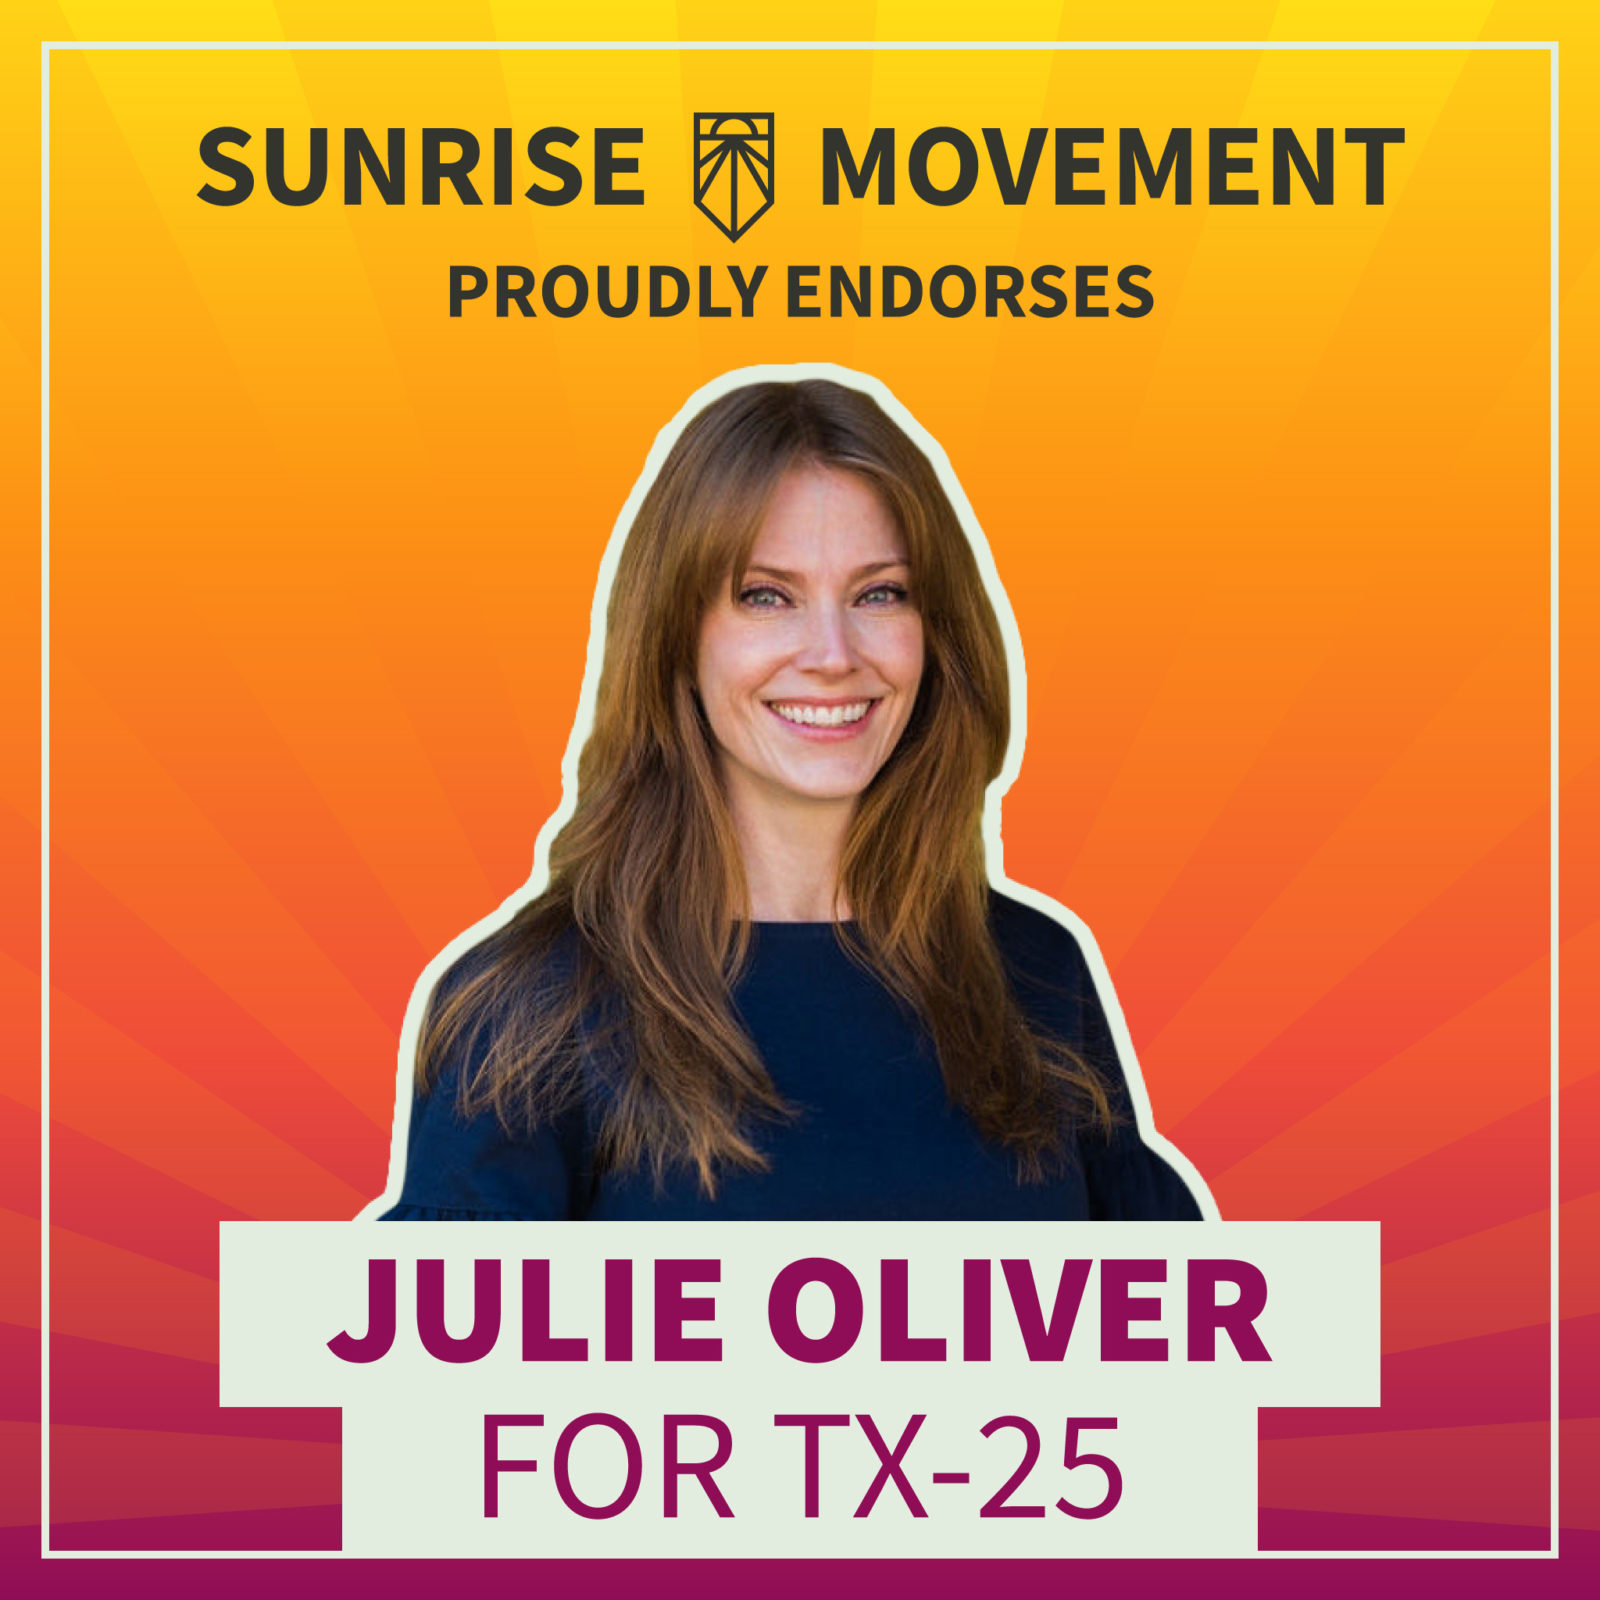 Uma foto de Julie Oliver com o texto: Sunrise Movement orgulhosamente endossa Julie Oliver para TX-25.